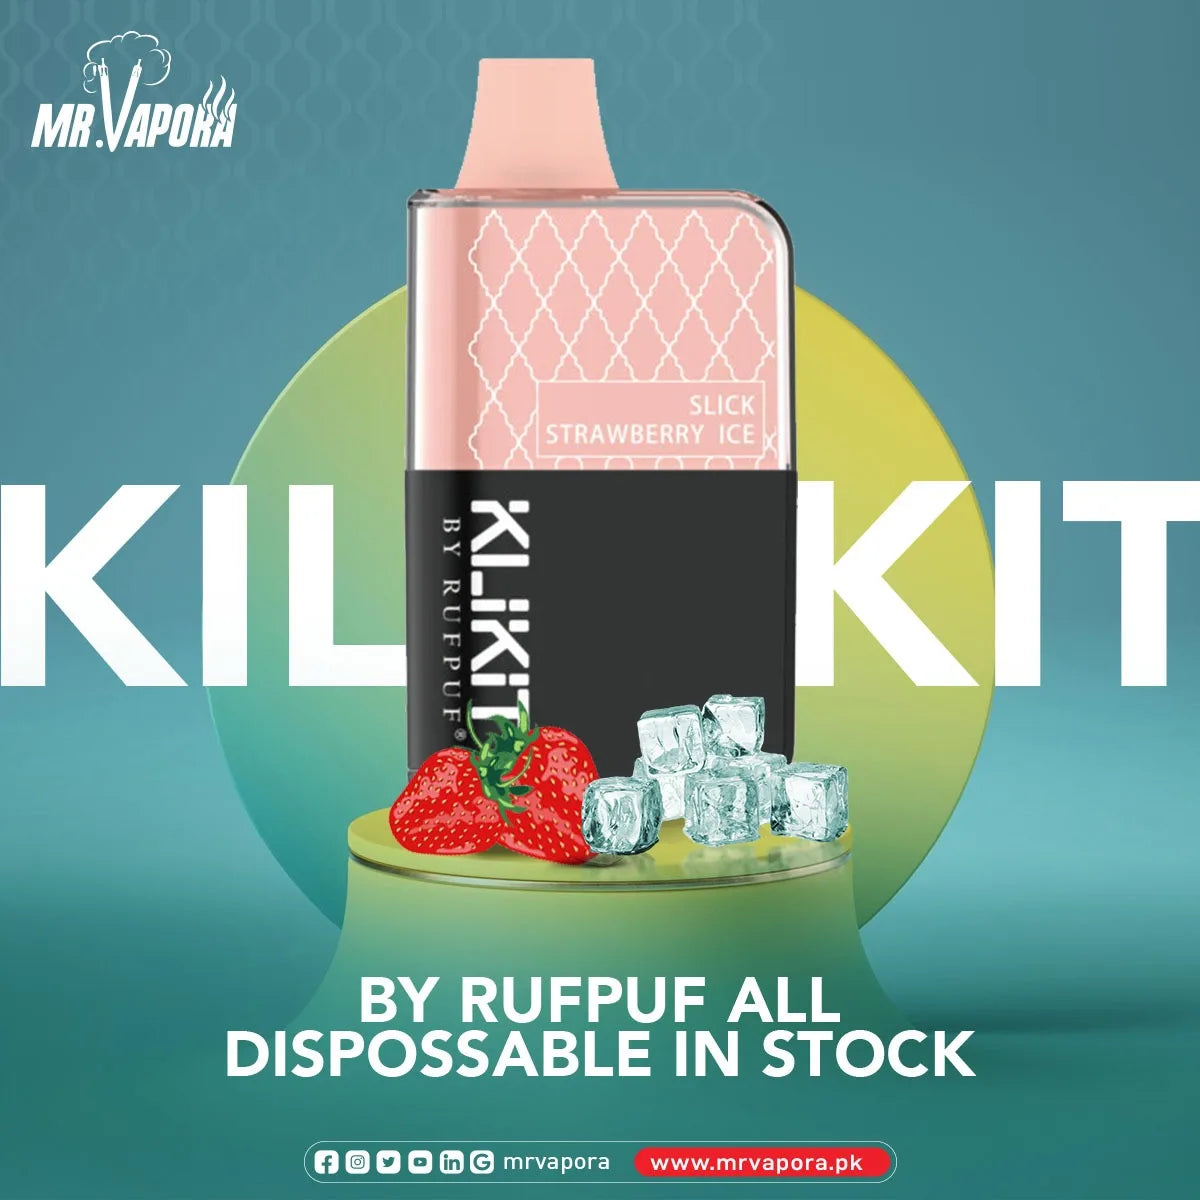 Rufpuf Klikit Disposable Vape In Pakistan